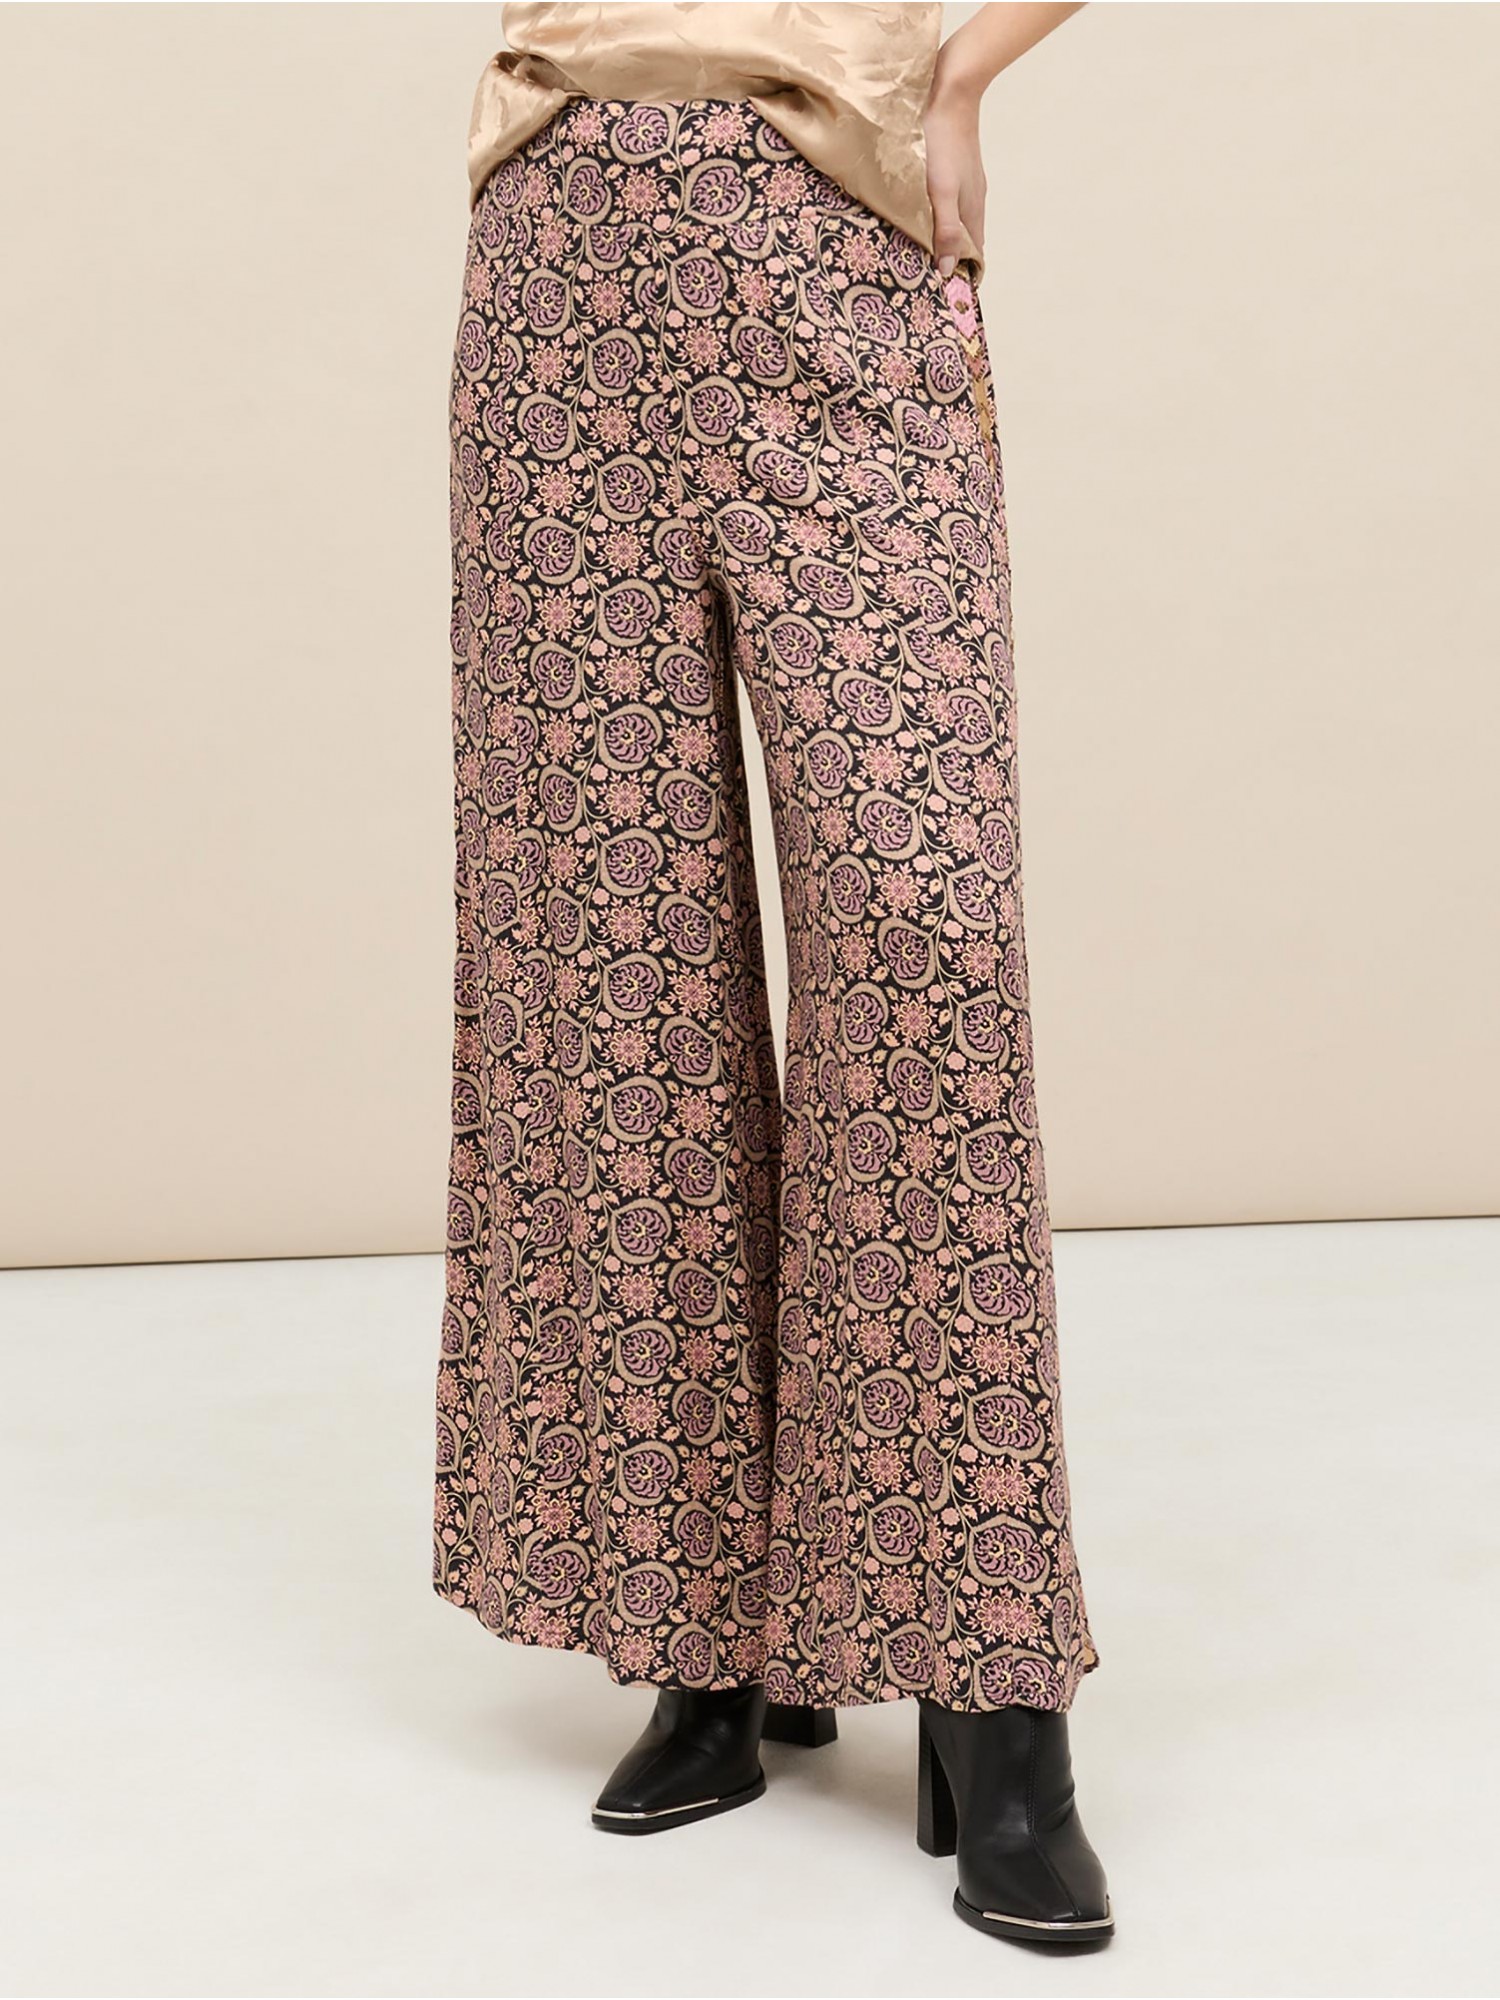 Pantalón largo Linxa NKN Nekane en shop canelascloset. Estampado étnico, bordado lateral y cintura en punto smock para mujer.